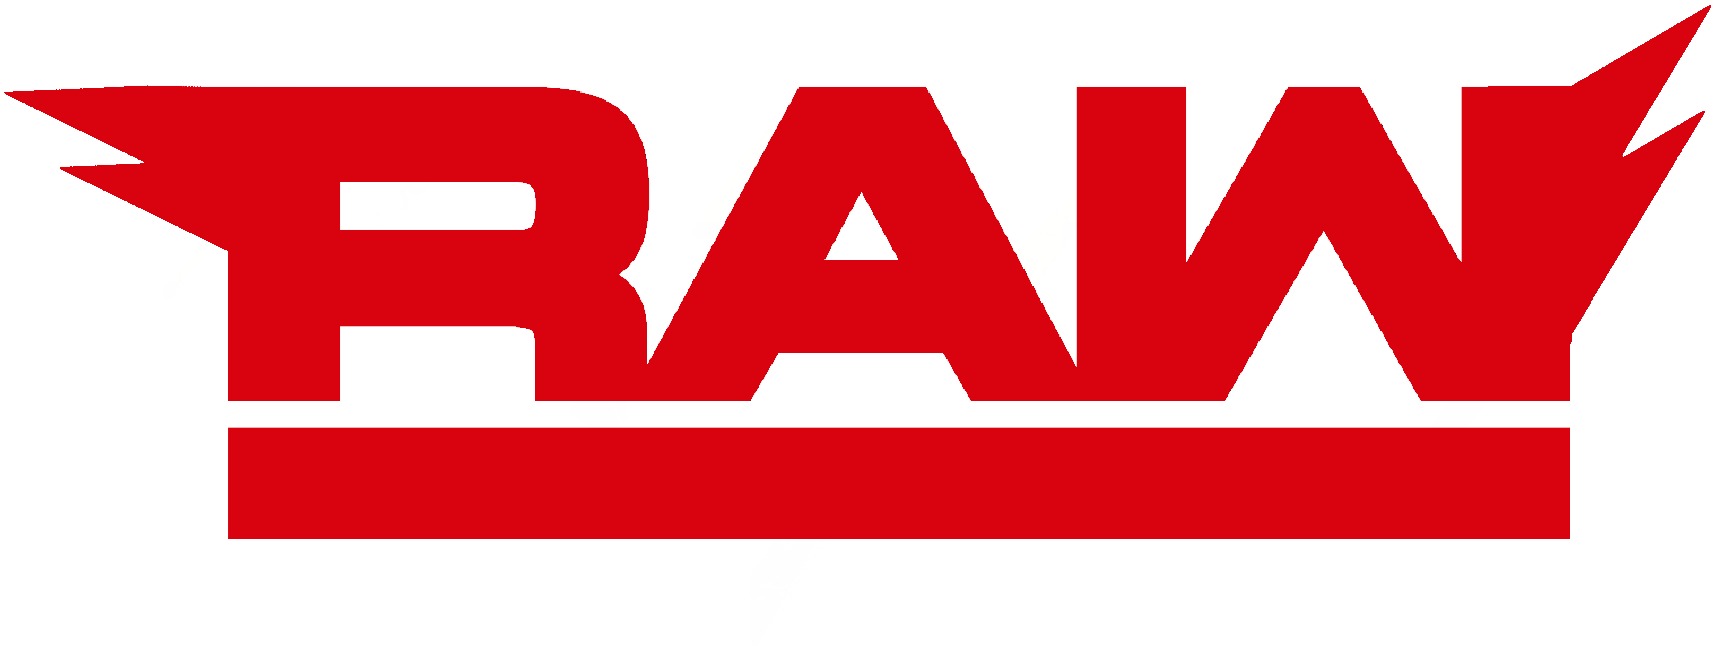 Nikiludogorets Raw Logo By Nikiludogorets - Wwe Raw 2018 Logo Png (1920x1080)